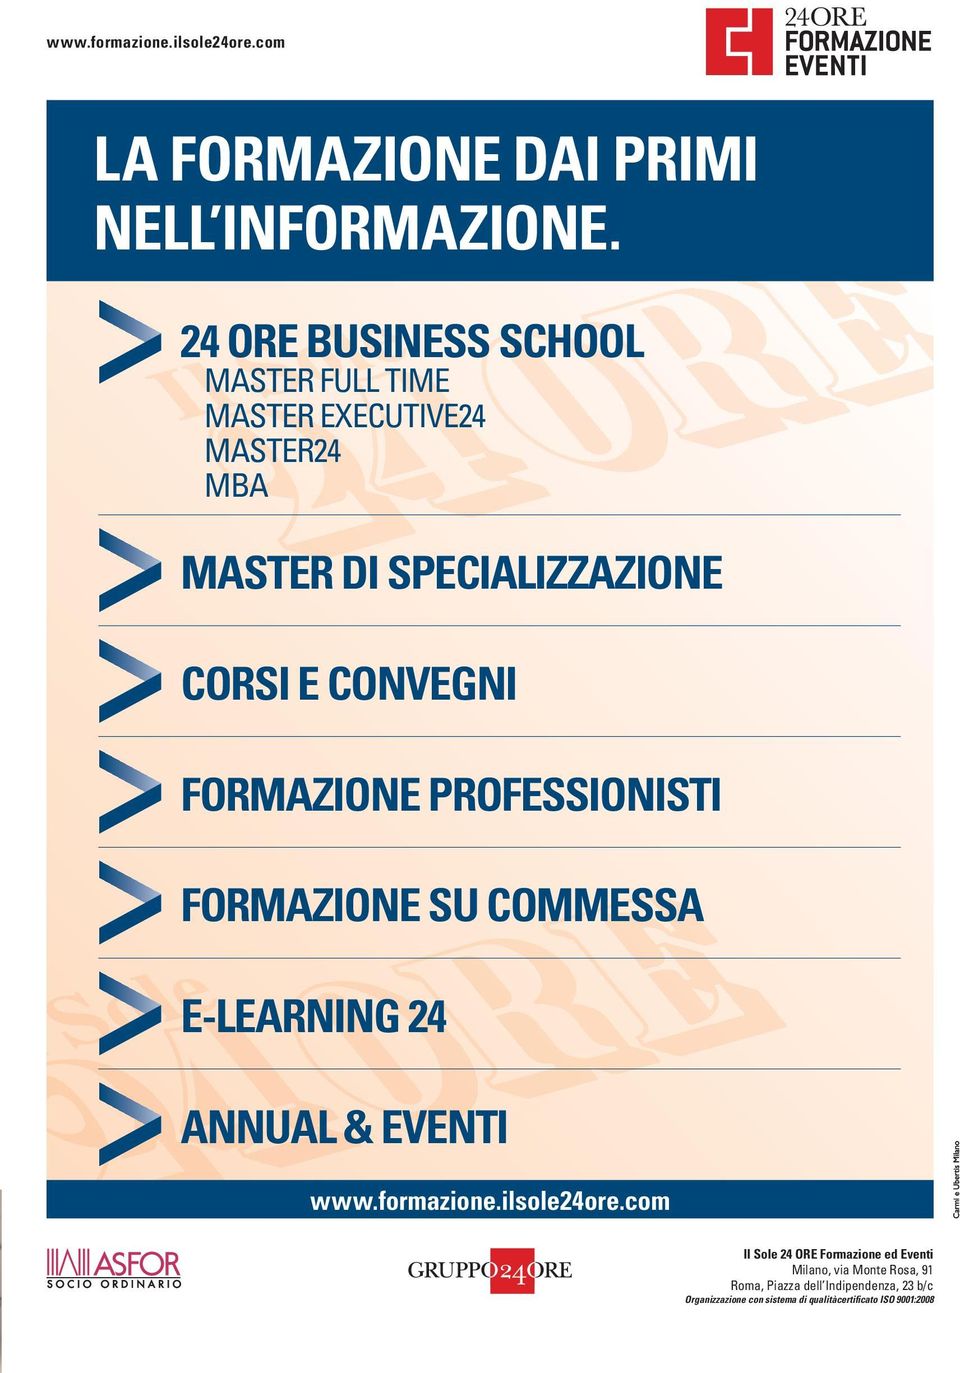 FormaZione professionisti FormaZione su commessa e-learning 24 annual & eventi www.formazione.ilsole24ore.